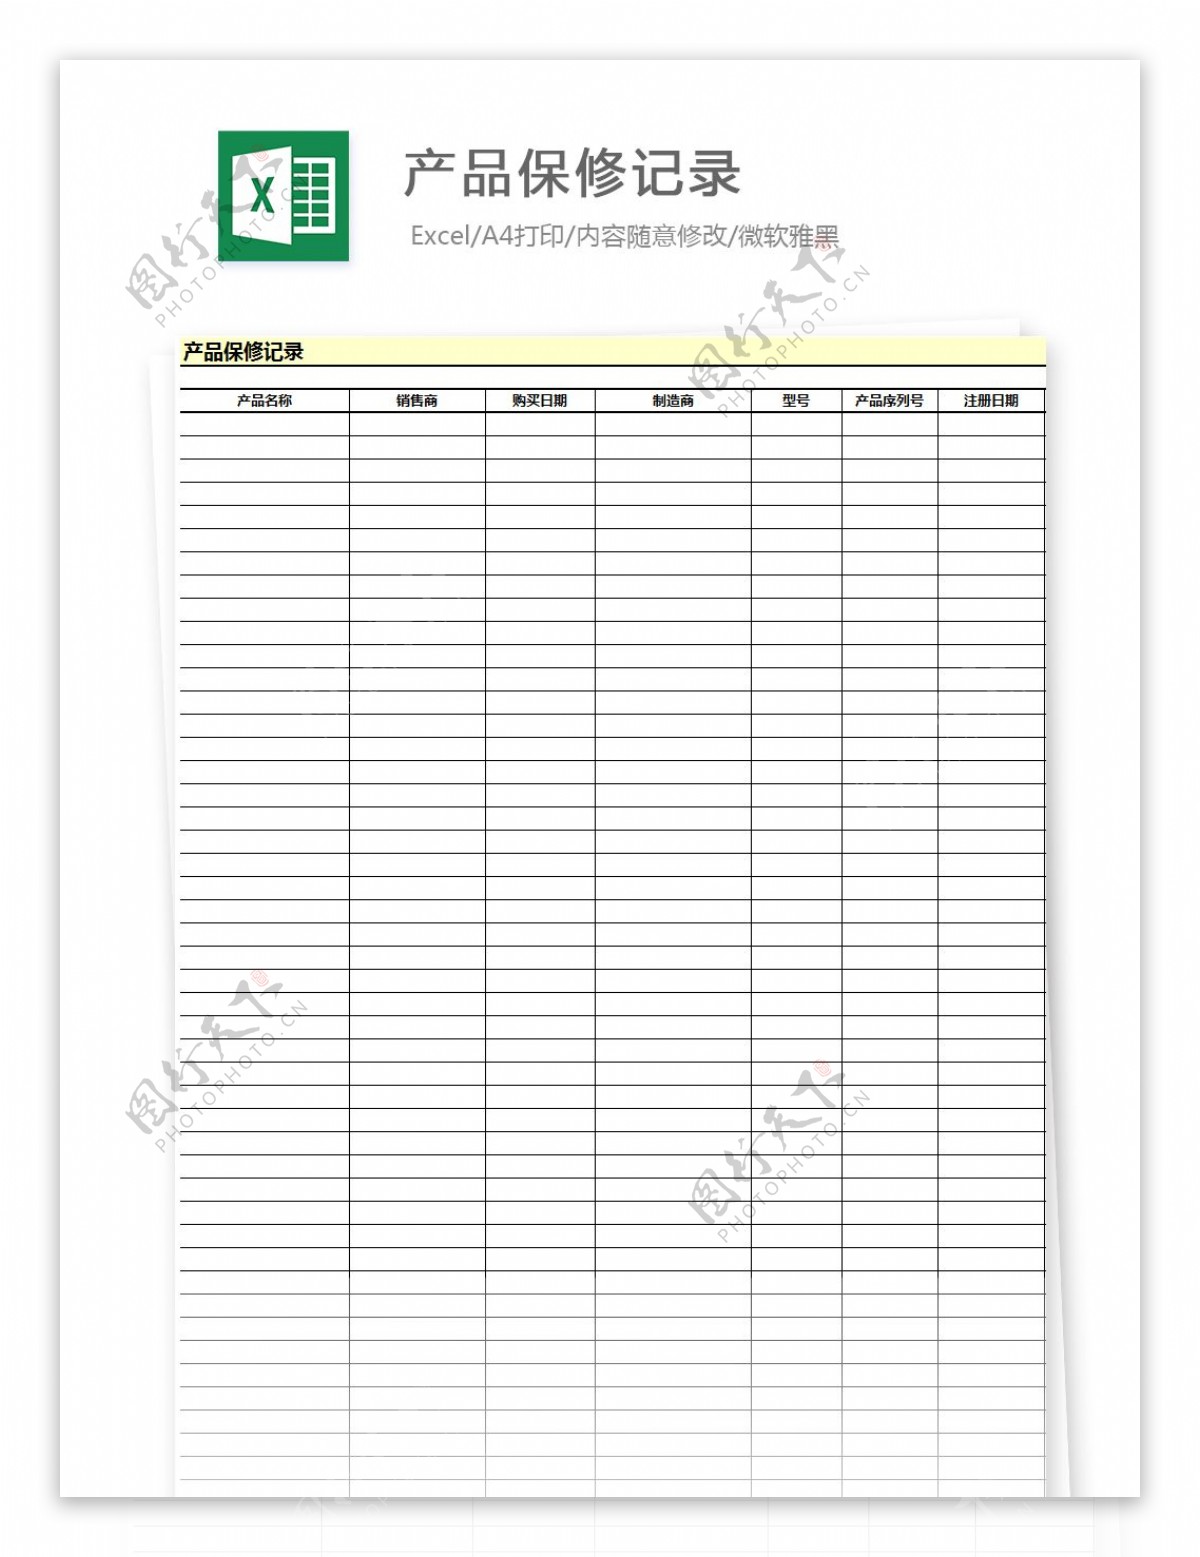 产品保修记录图表模板Excel图表